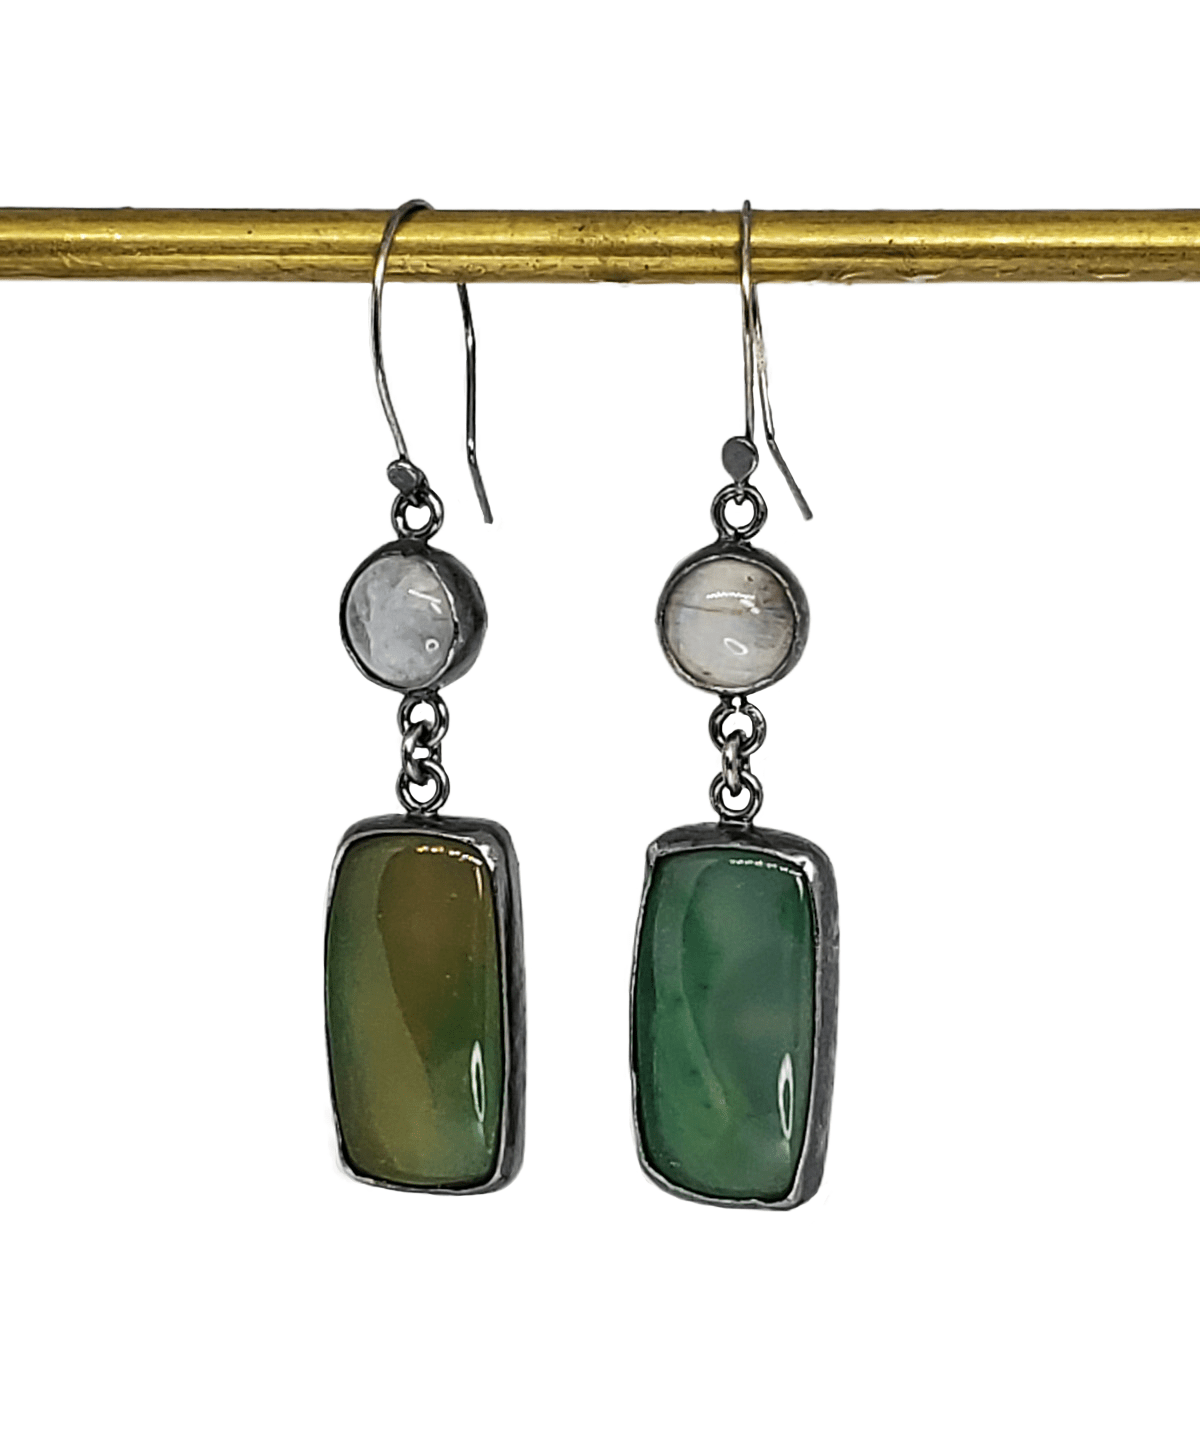 janet lasher Jewelry Earring Green Onyx &amp; Moonstone Earrings